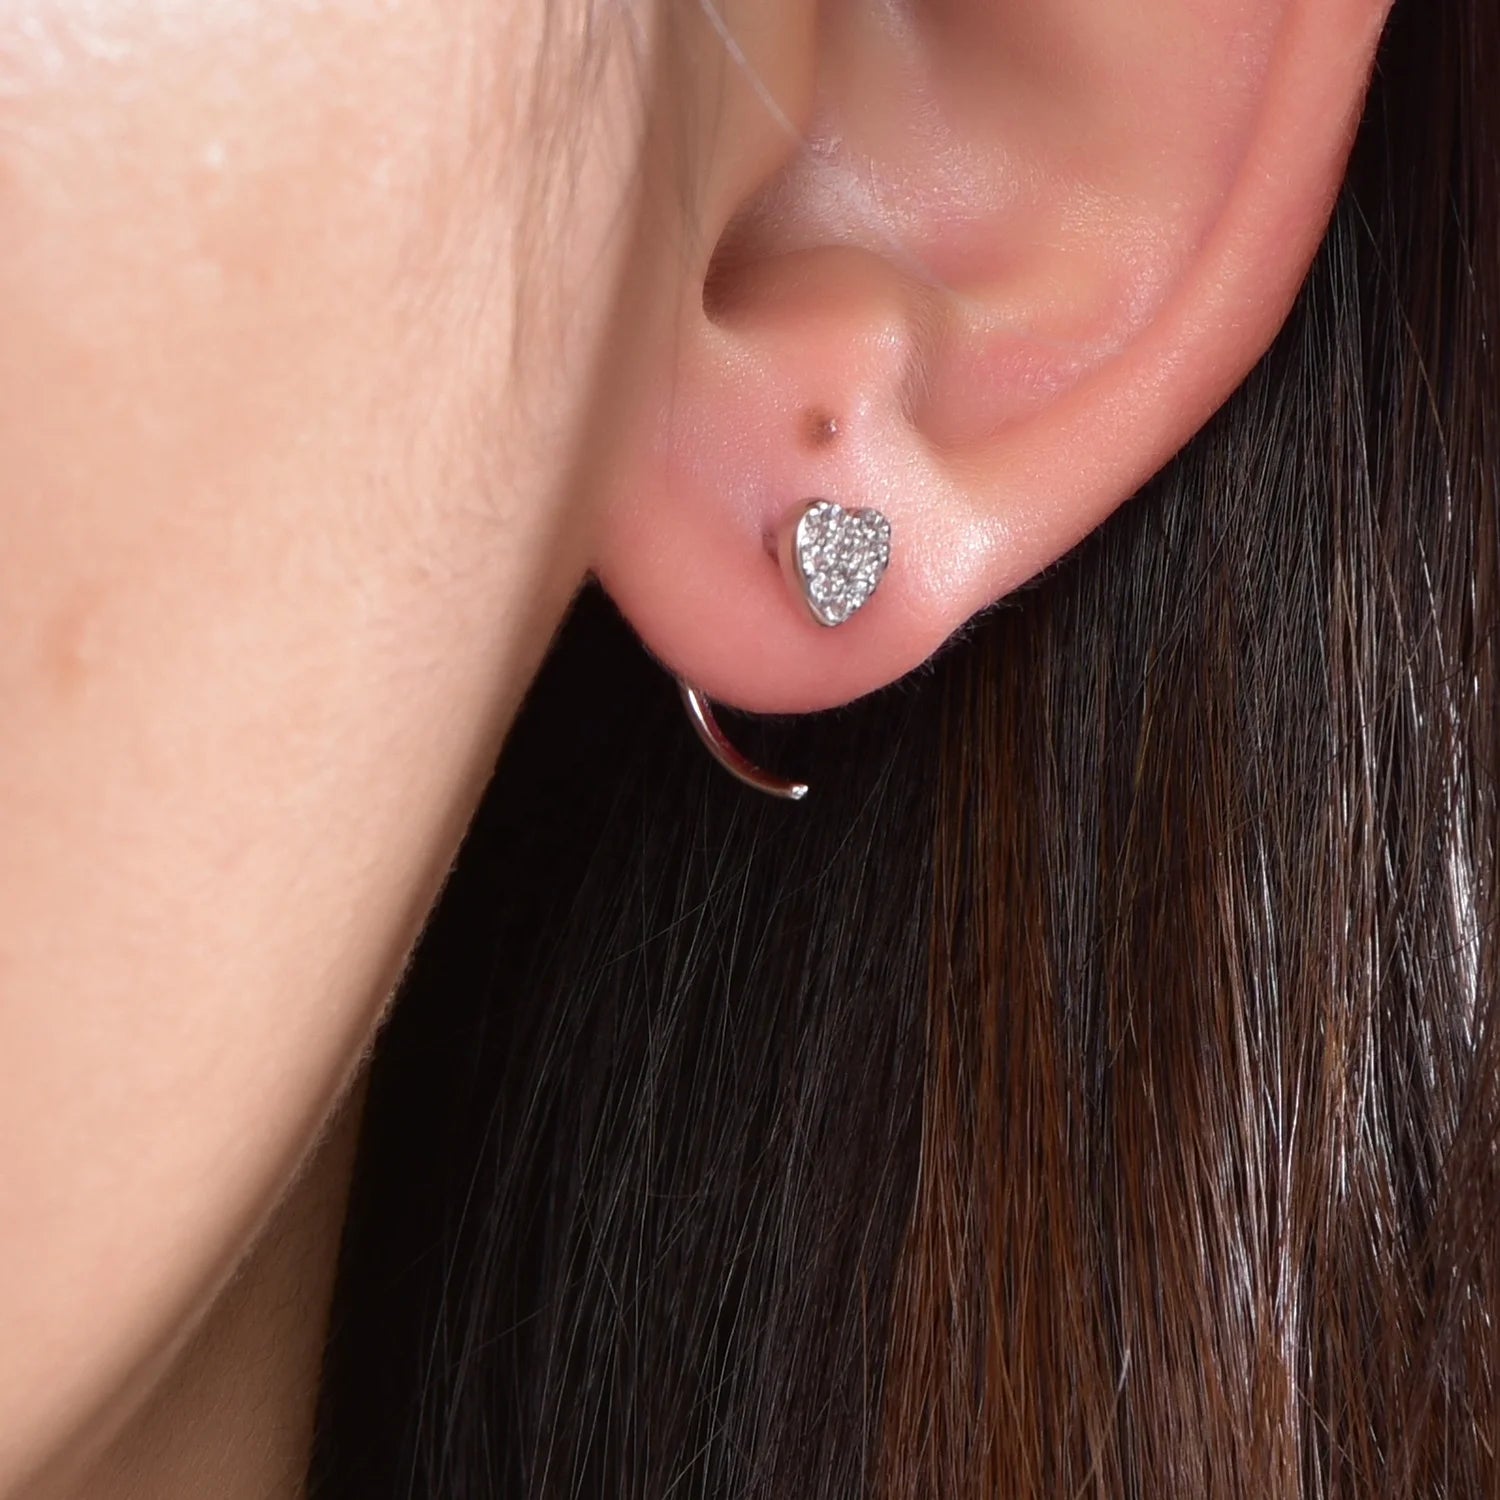 Sterling silver earrings 925 Solid Gold White zircon Ear Huggers hook heart stud earrings Kirin Jewelry